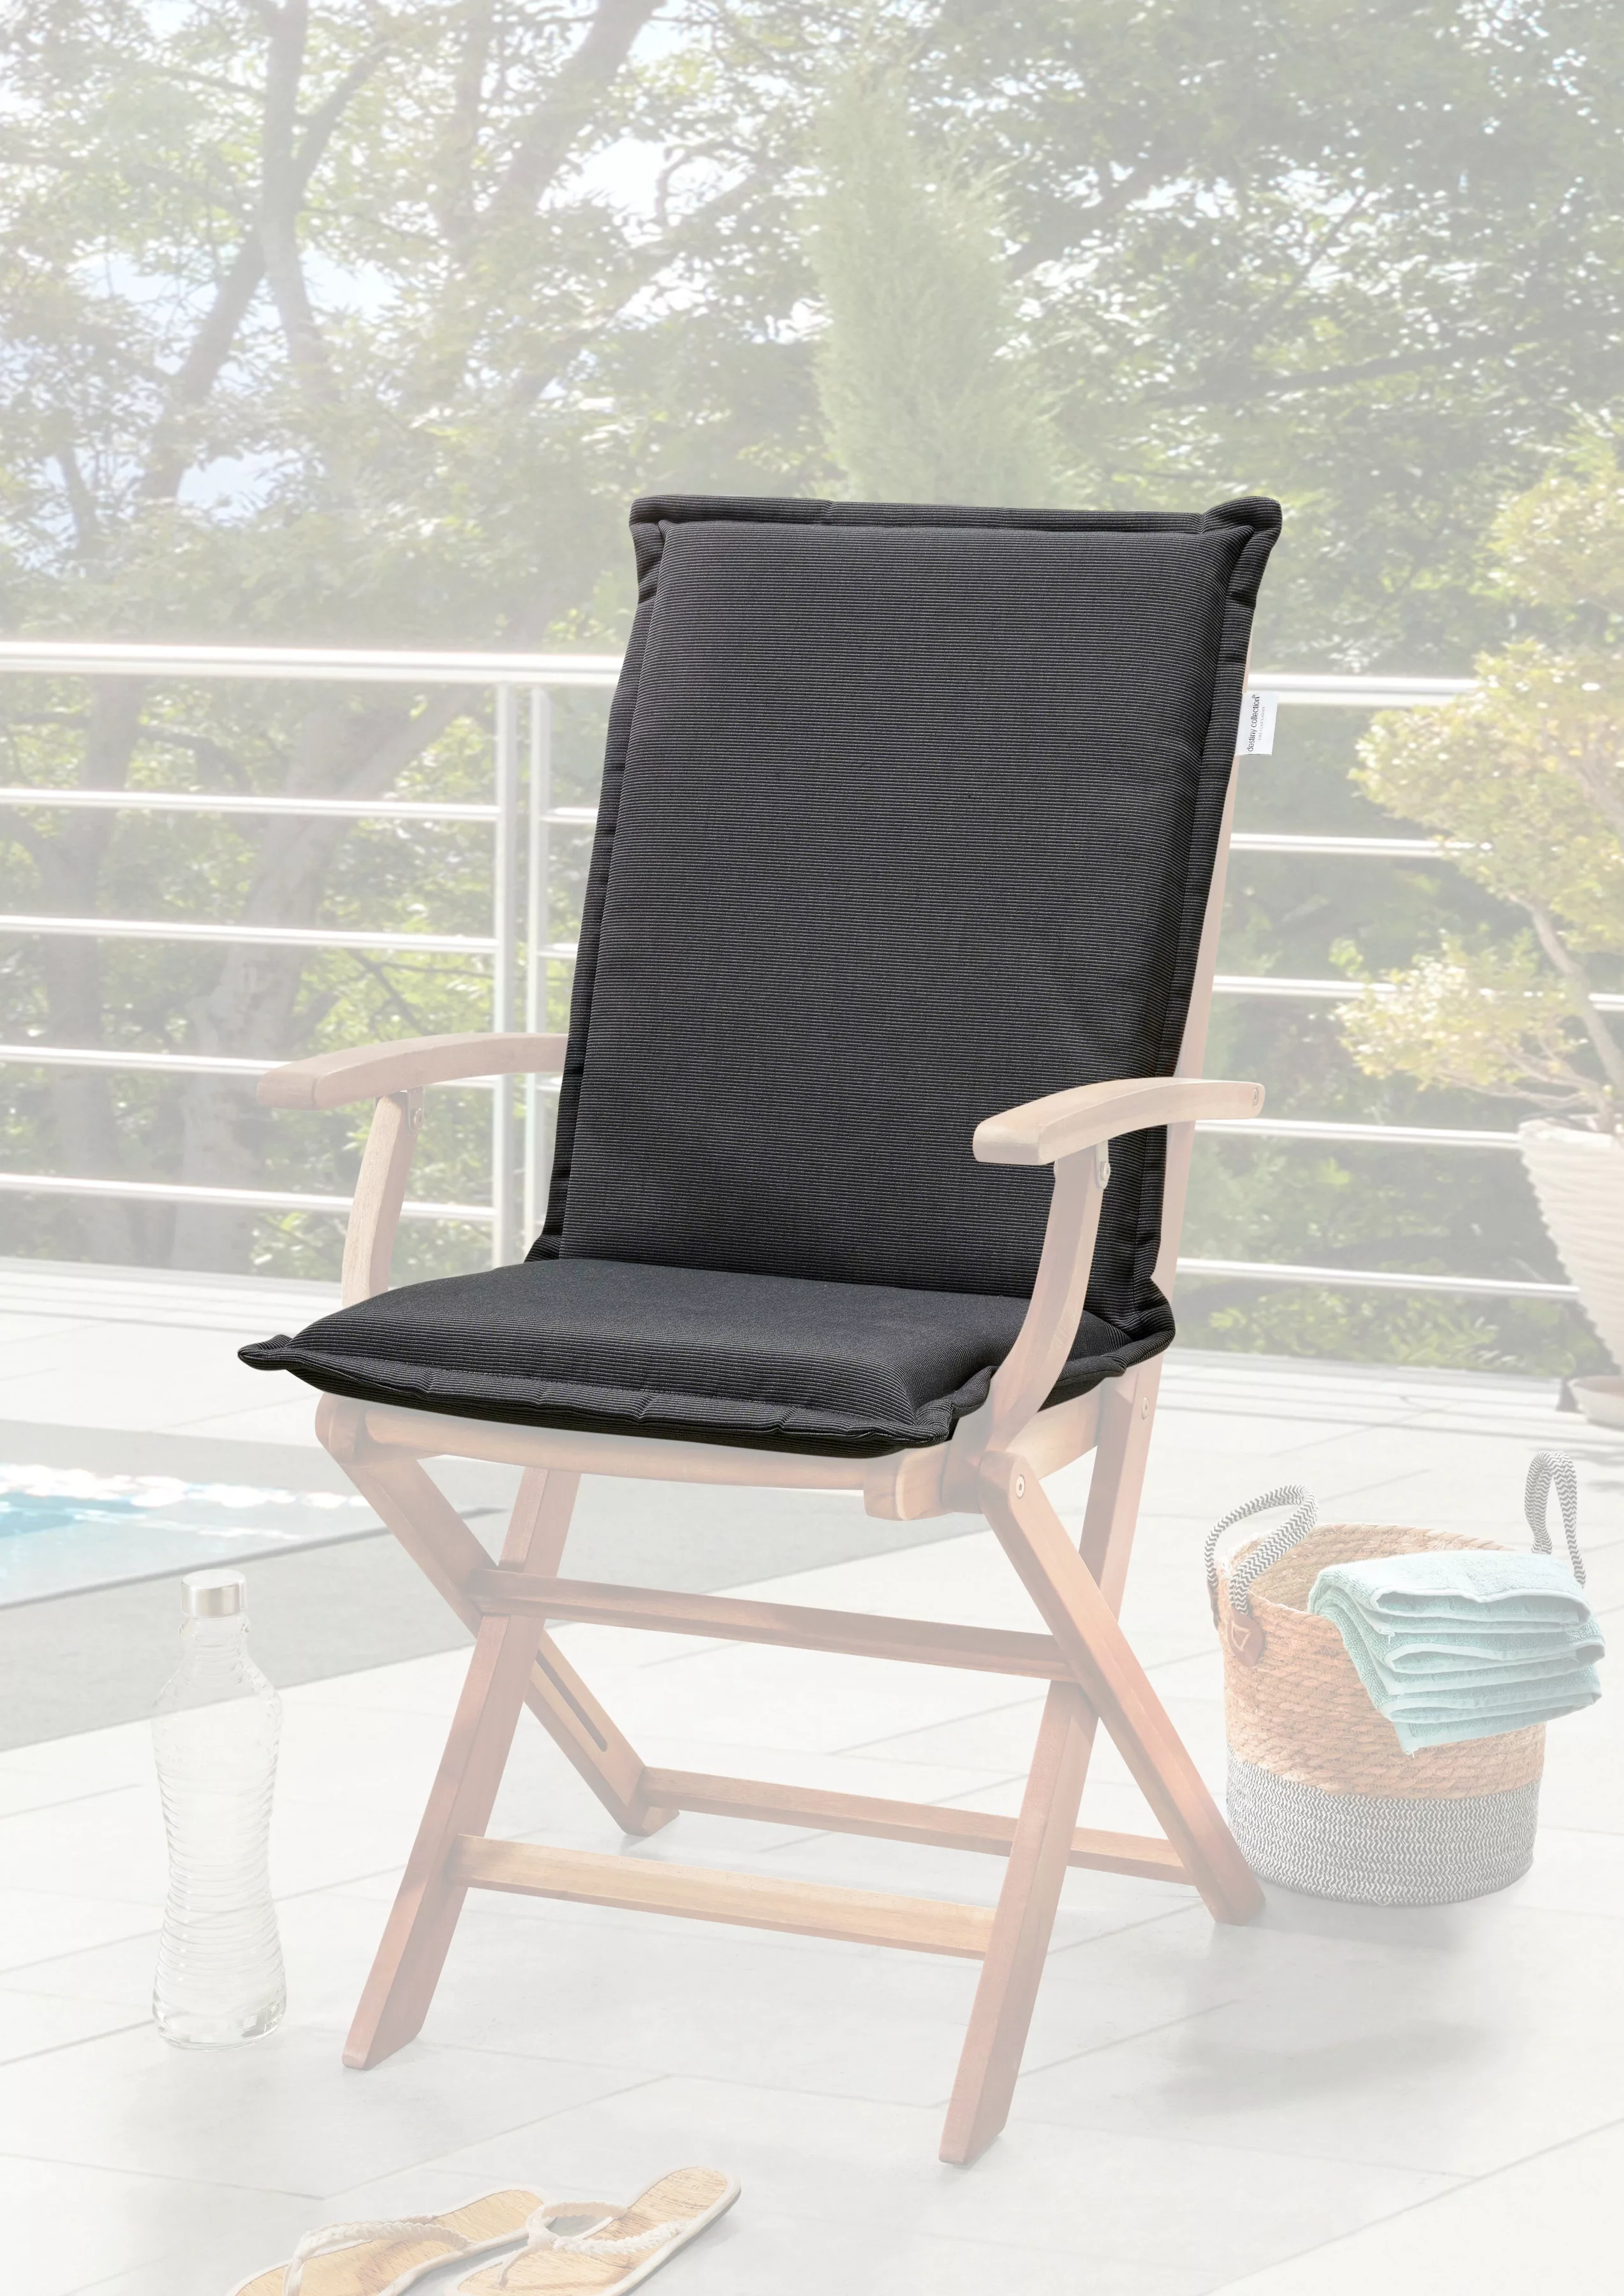 Destiny Sitzauflage "POLSTER", Sitzkissen für Sessel oder Hocker 50x45x5cm, günstig online kaufen